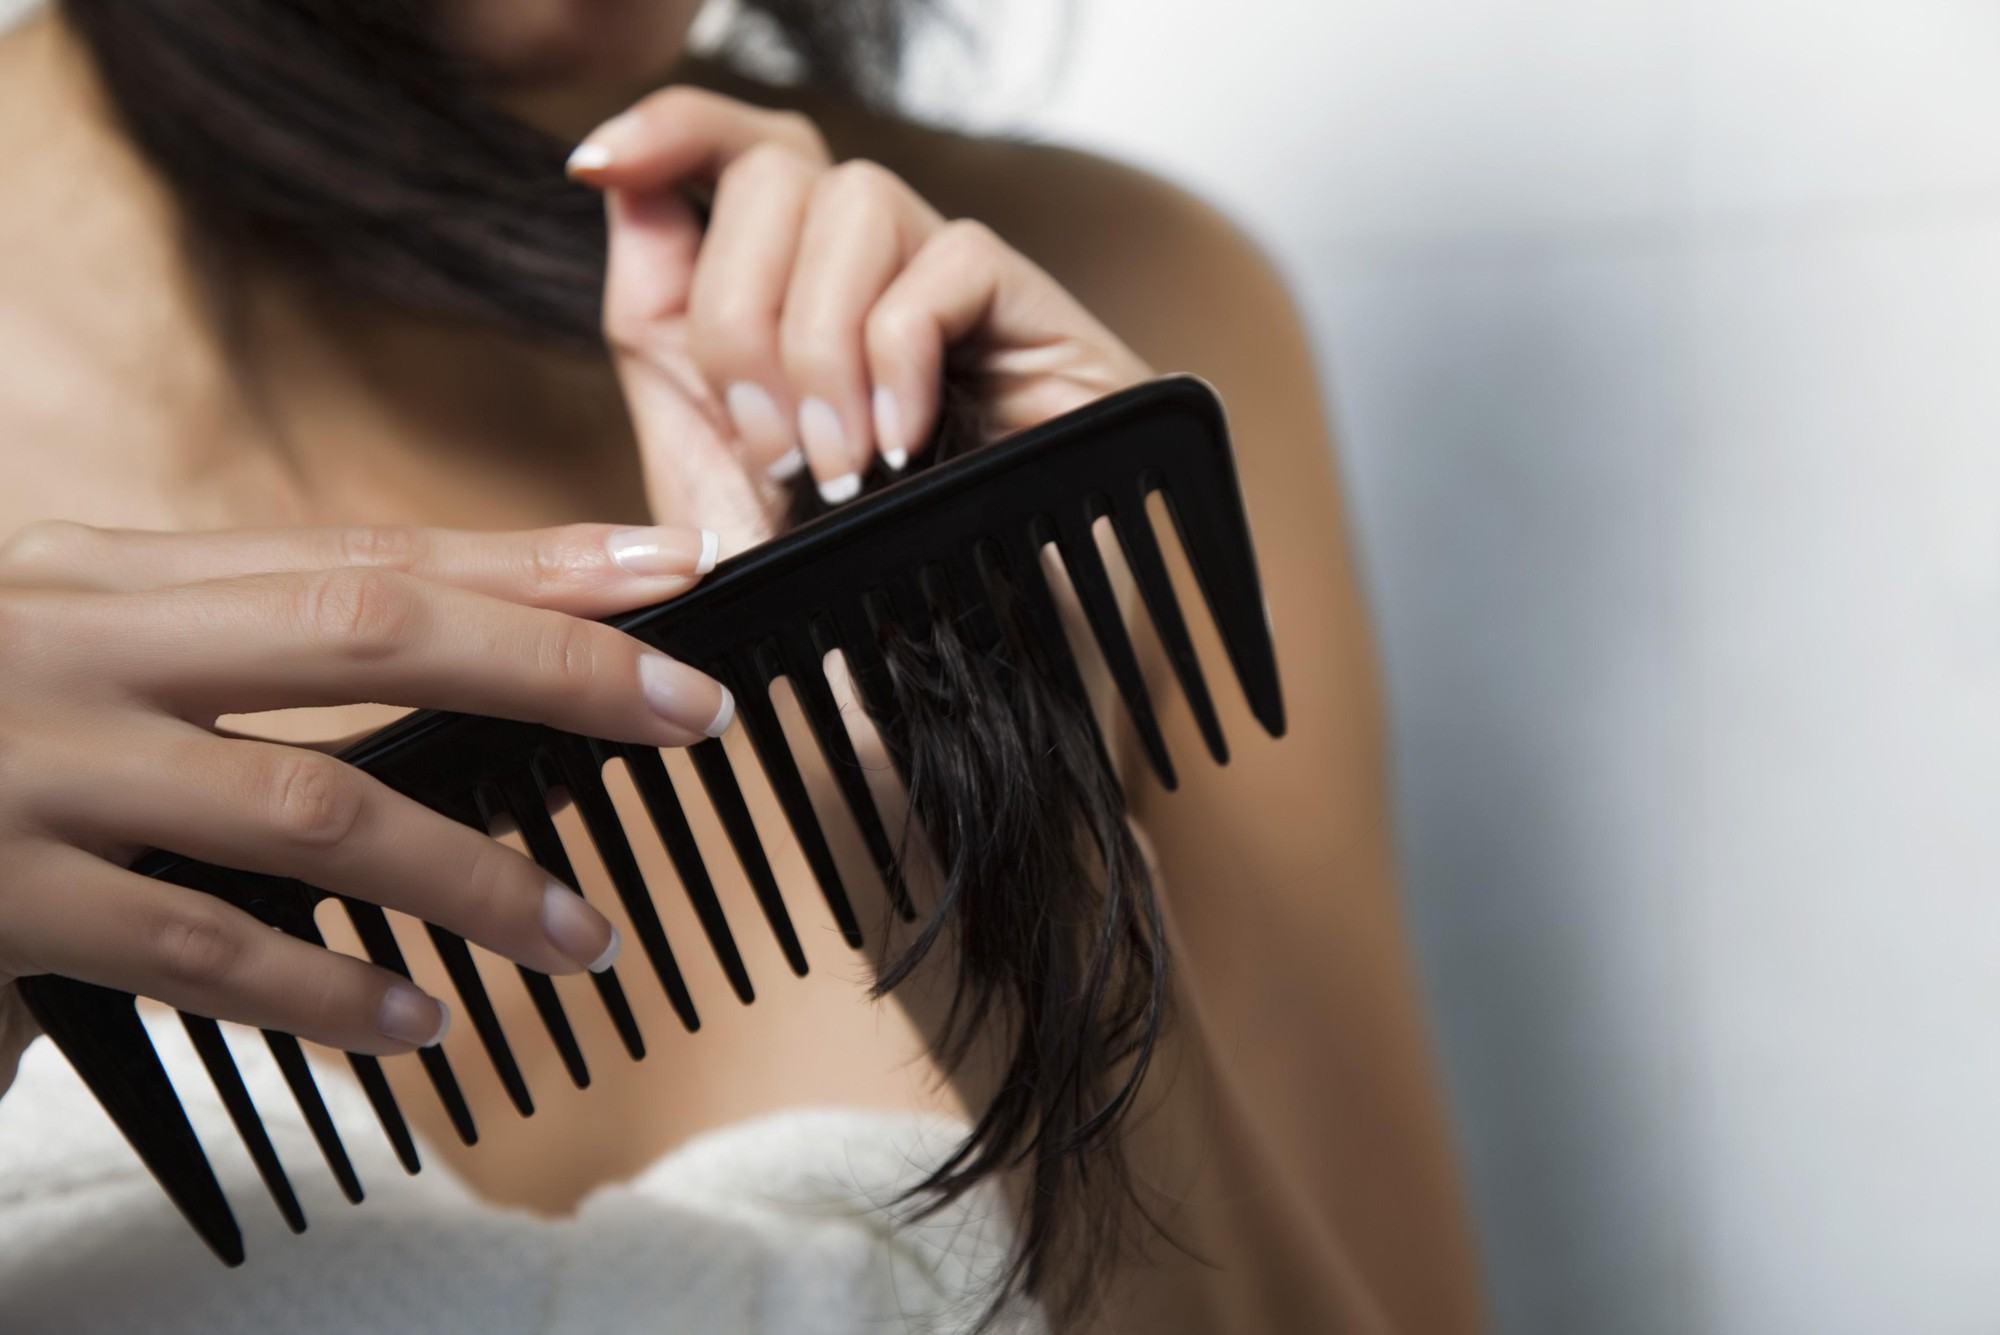 Sai lầm thường gặp khi gội đầu khiến tóc bạn nhanh bết dính và phát sinh đầy gàu - Ảnh 1.